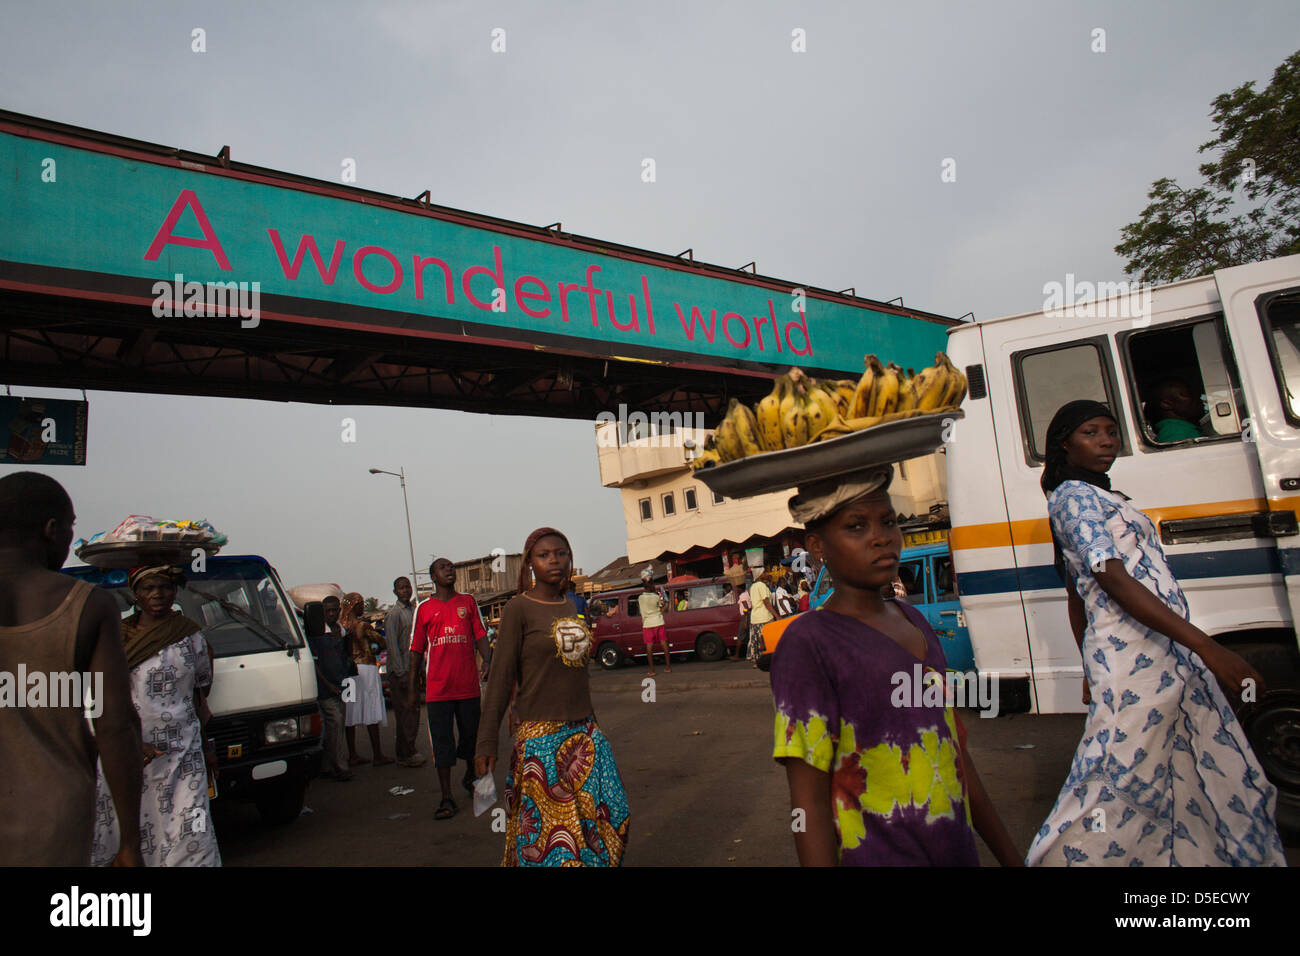 The city of Accra, Ghana. Stock Photo